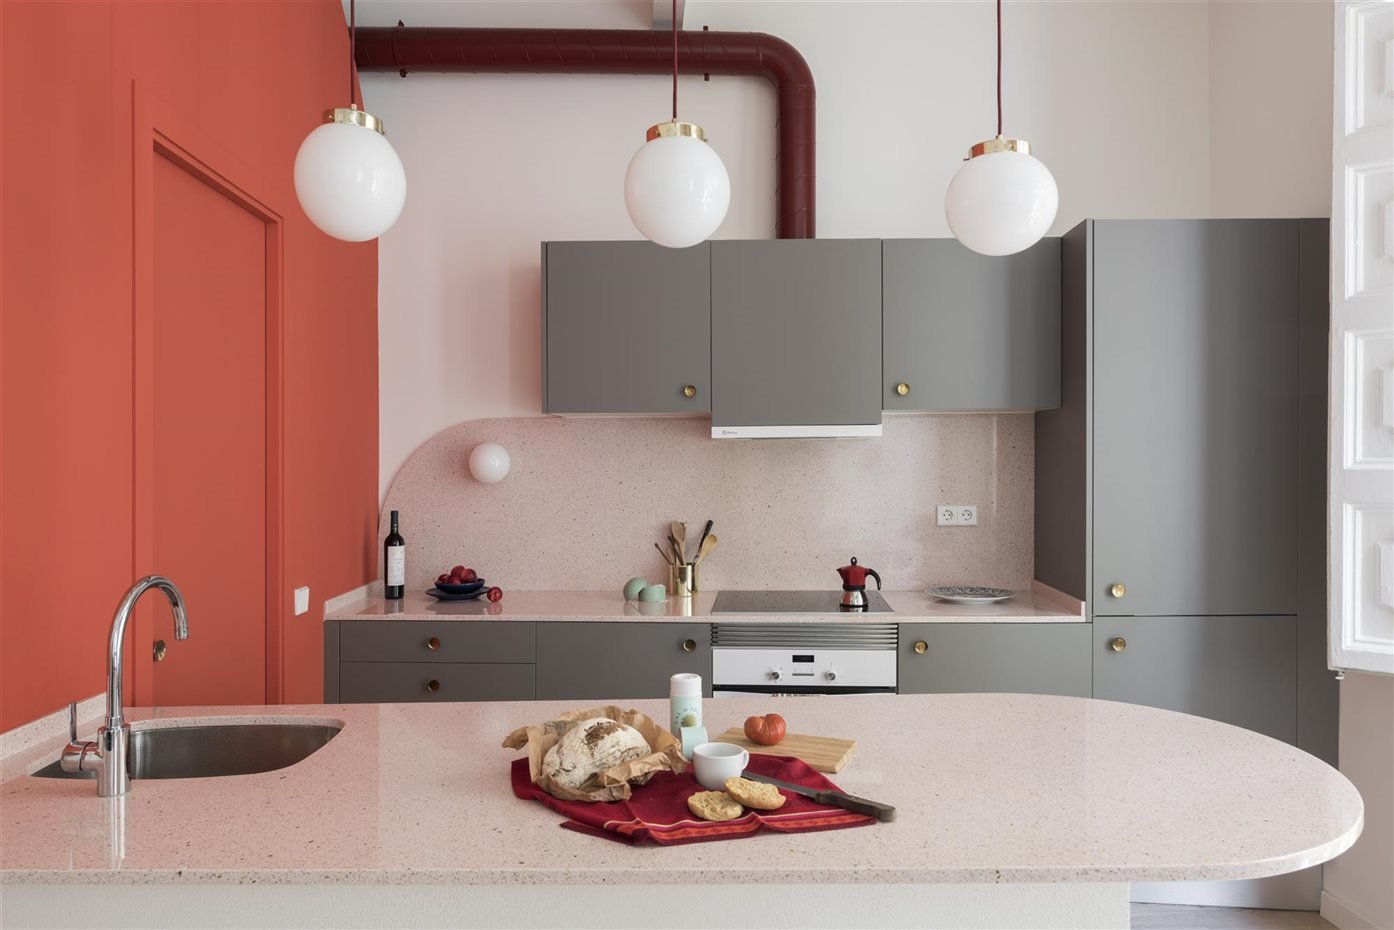 piso en barcelona con paredes de color rosa cocina con muebles de color gris